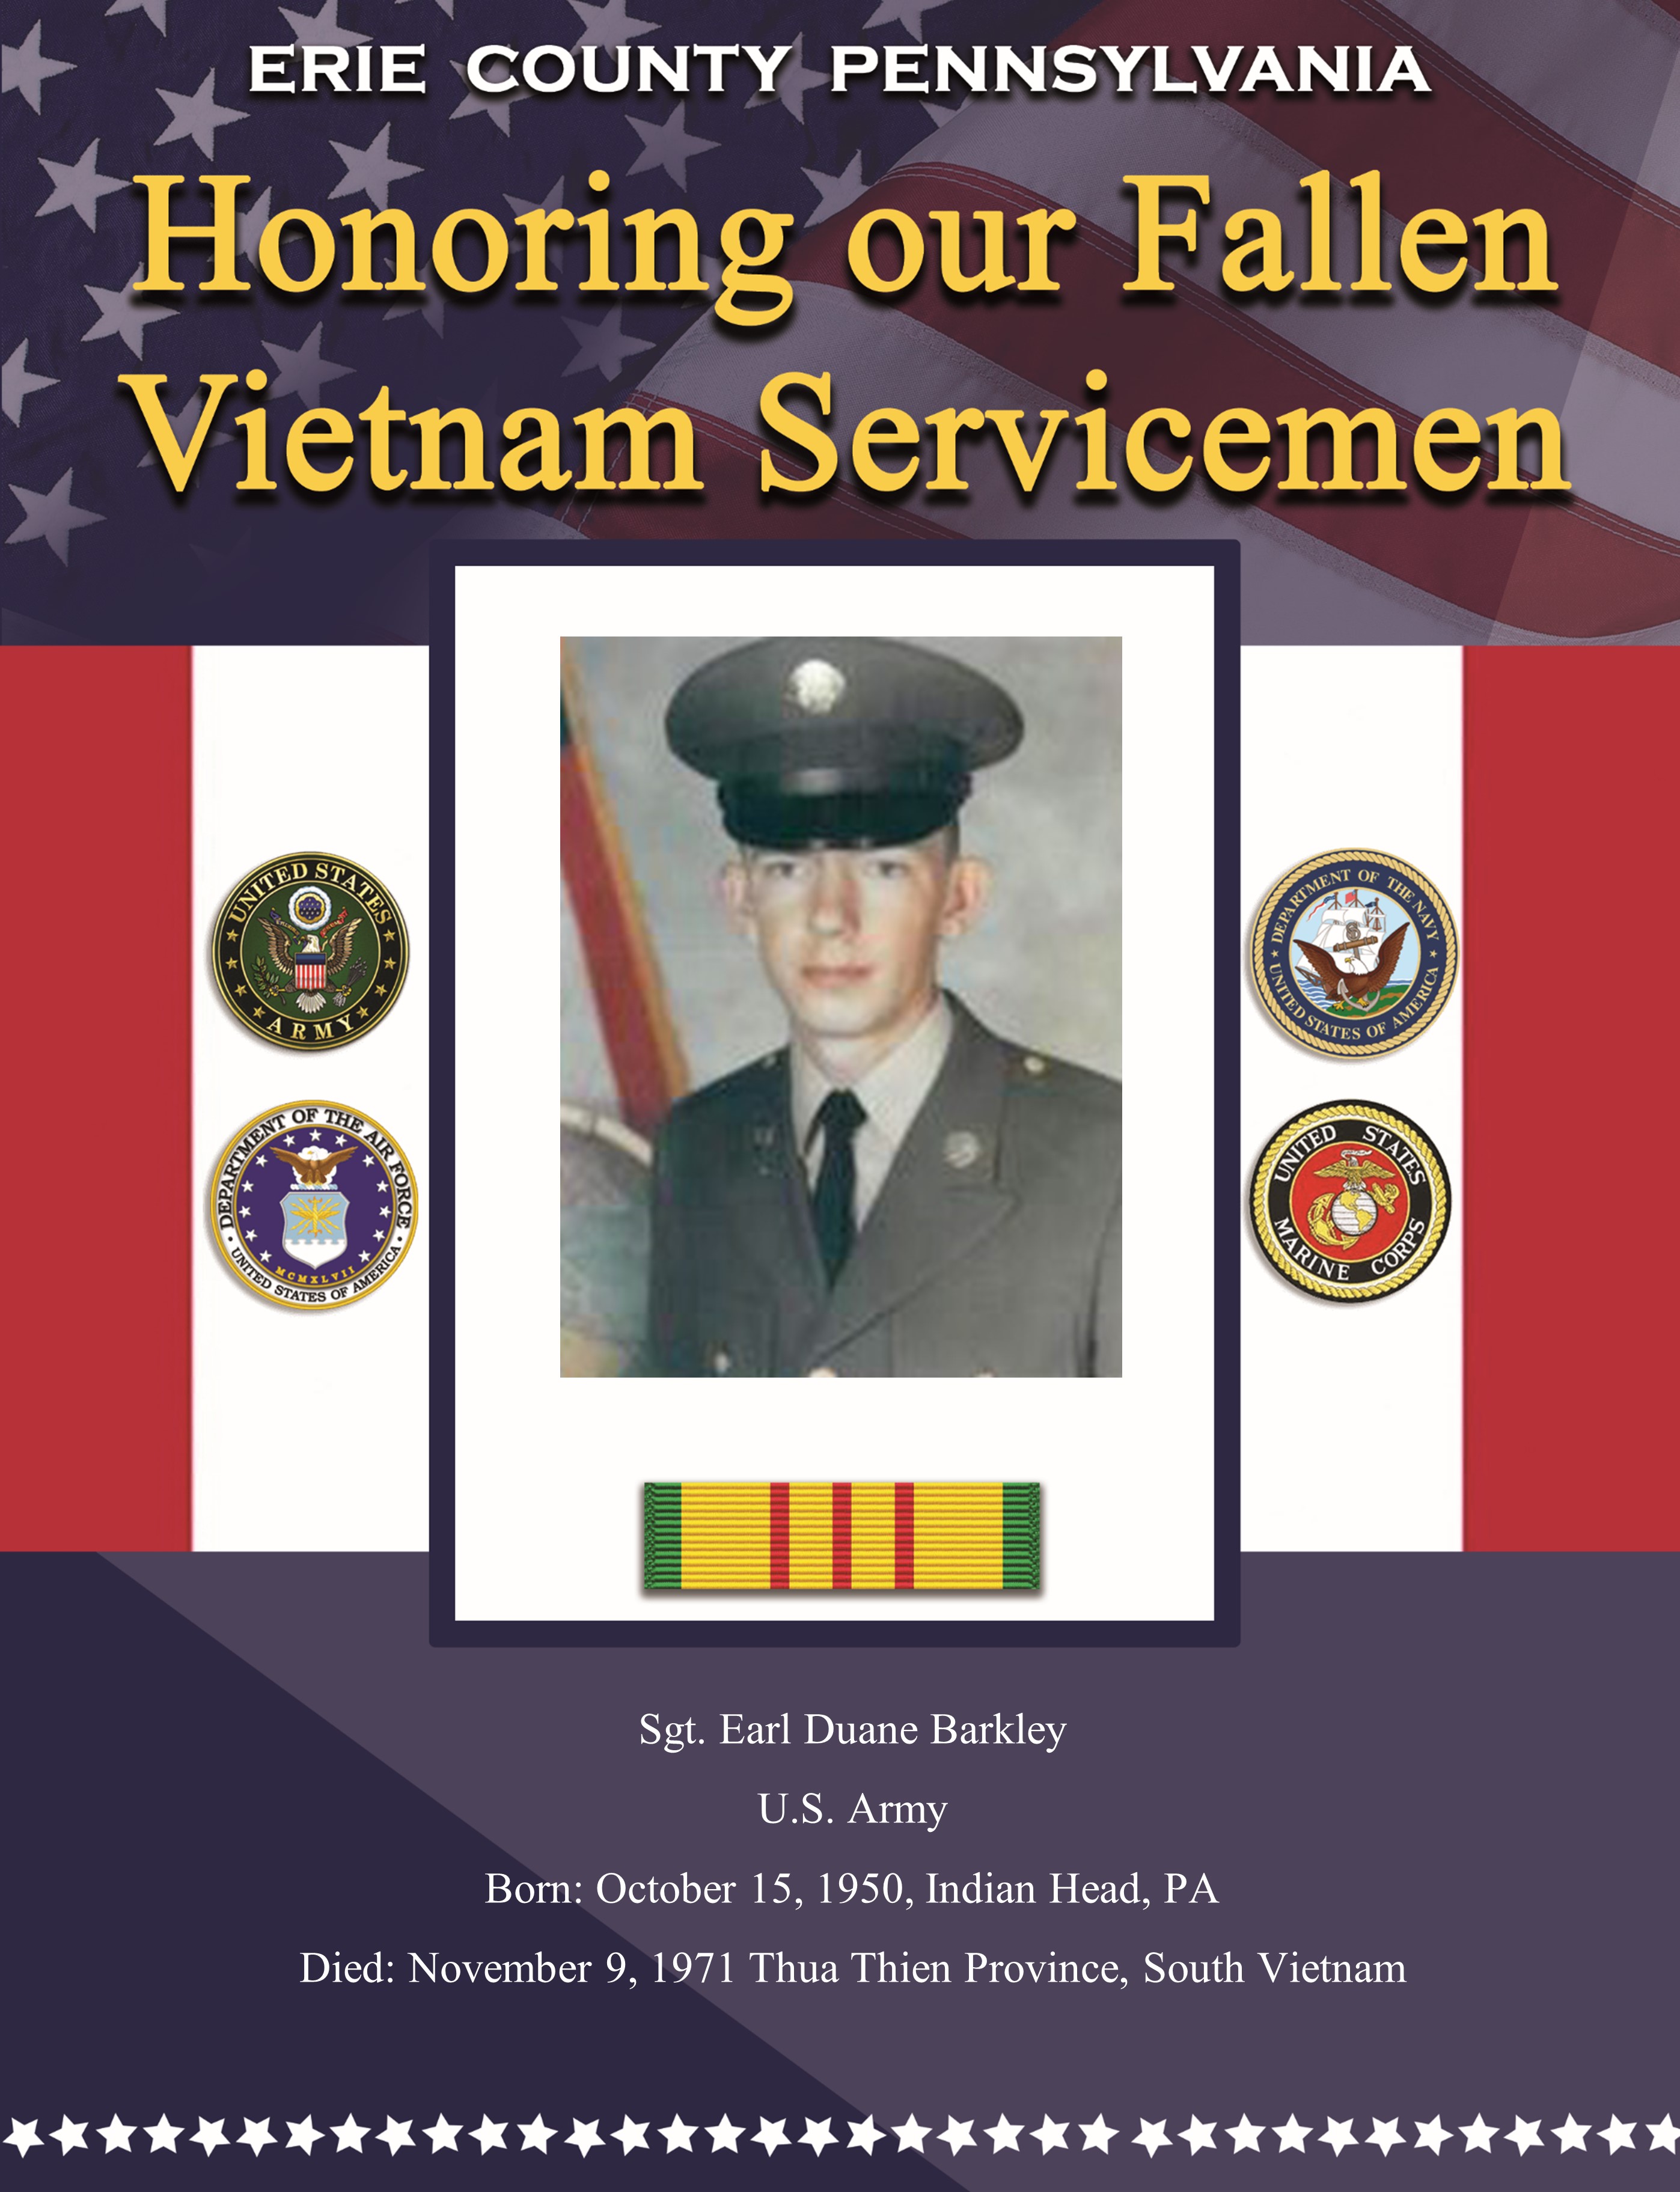 Fallen in Vietnam 59